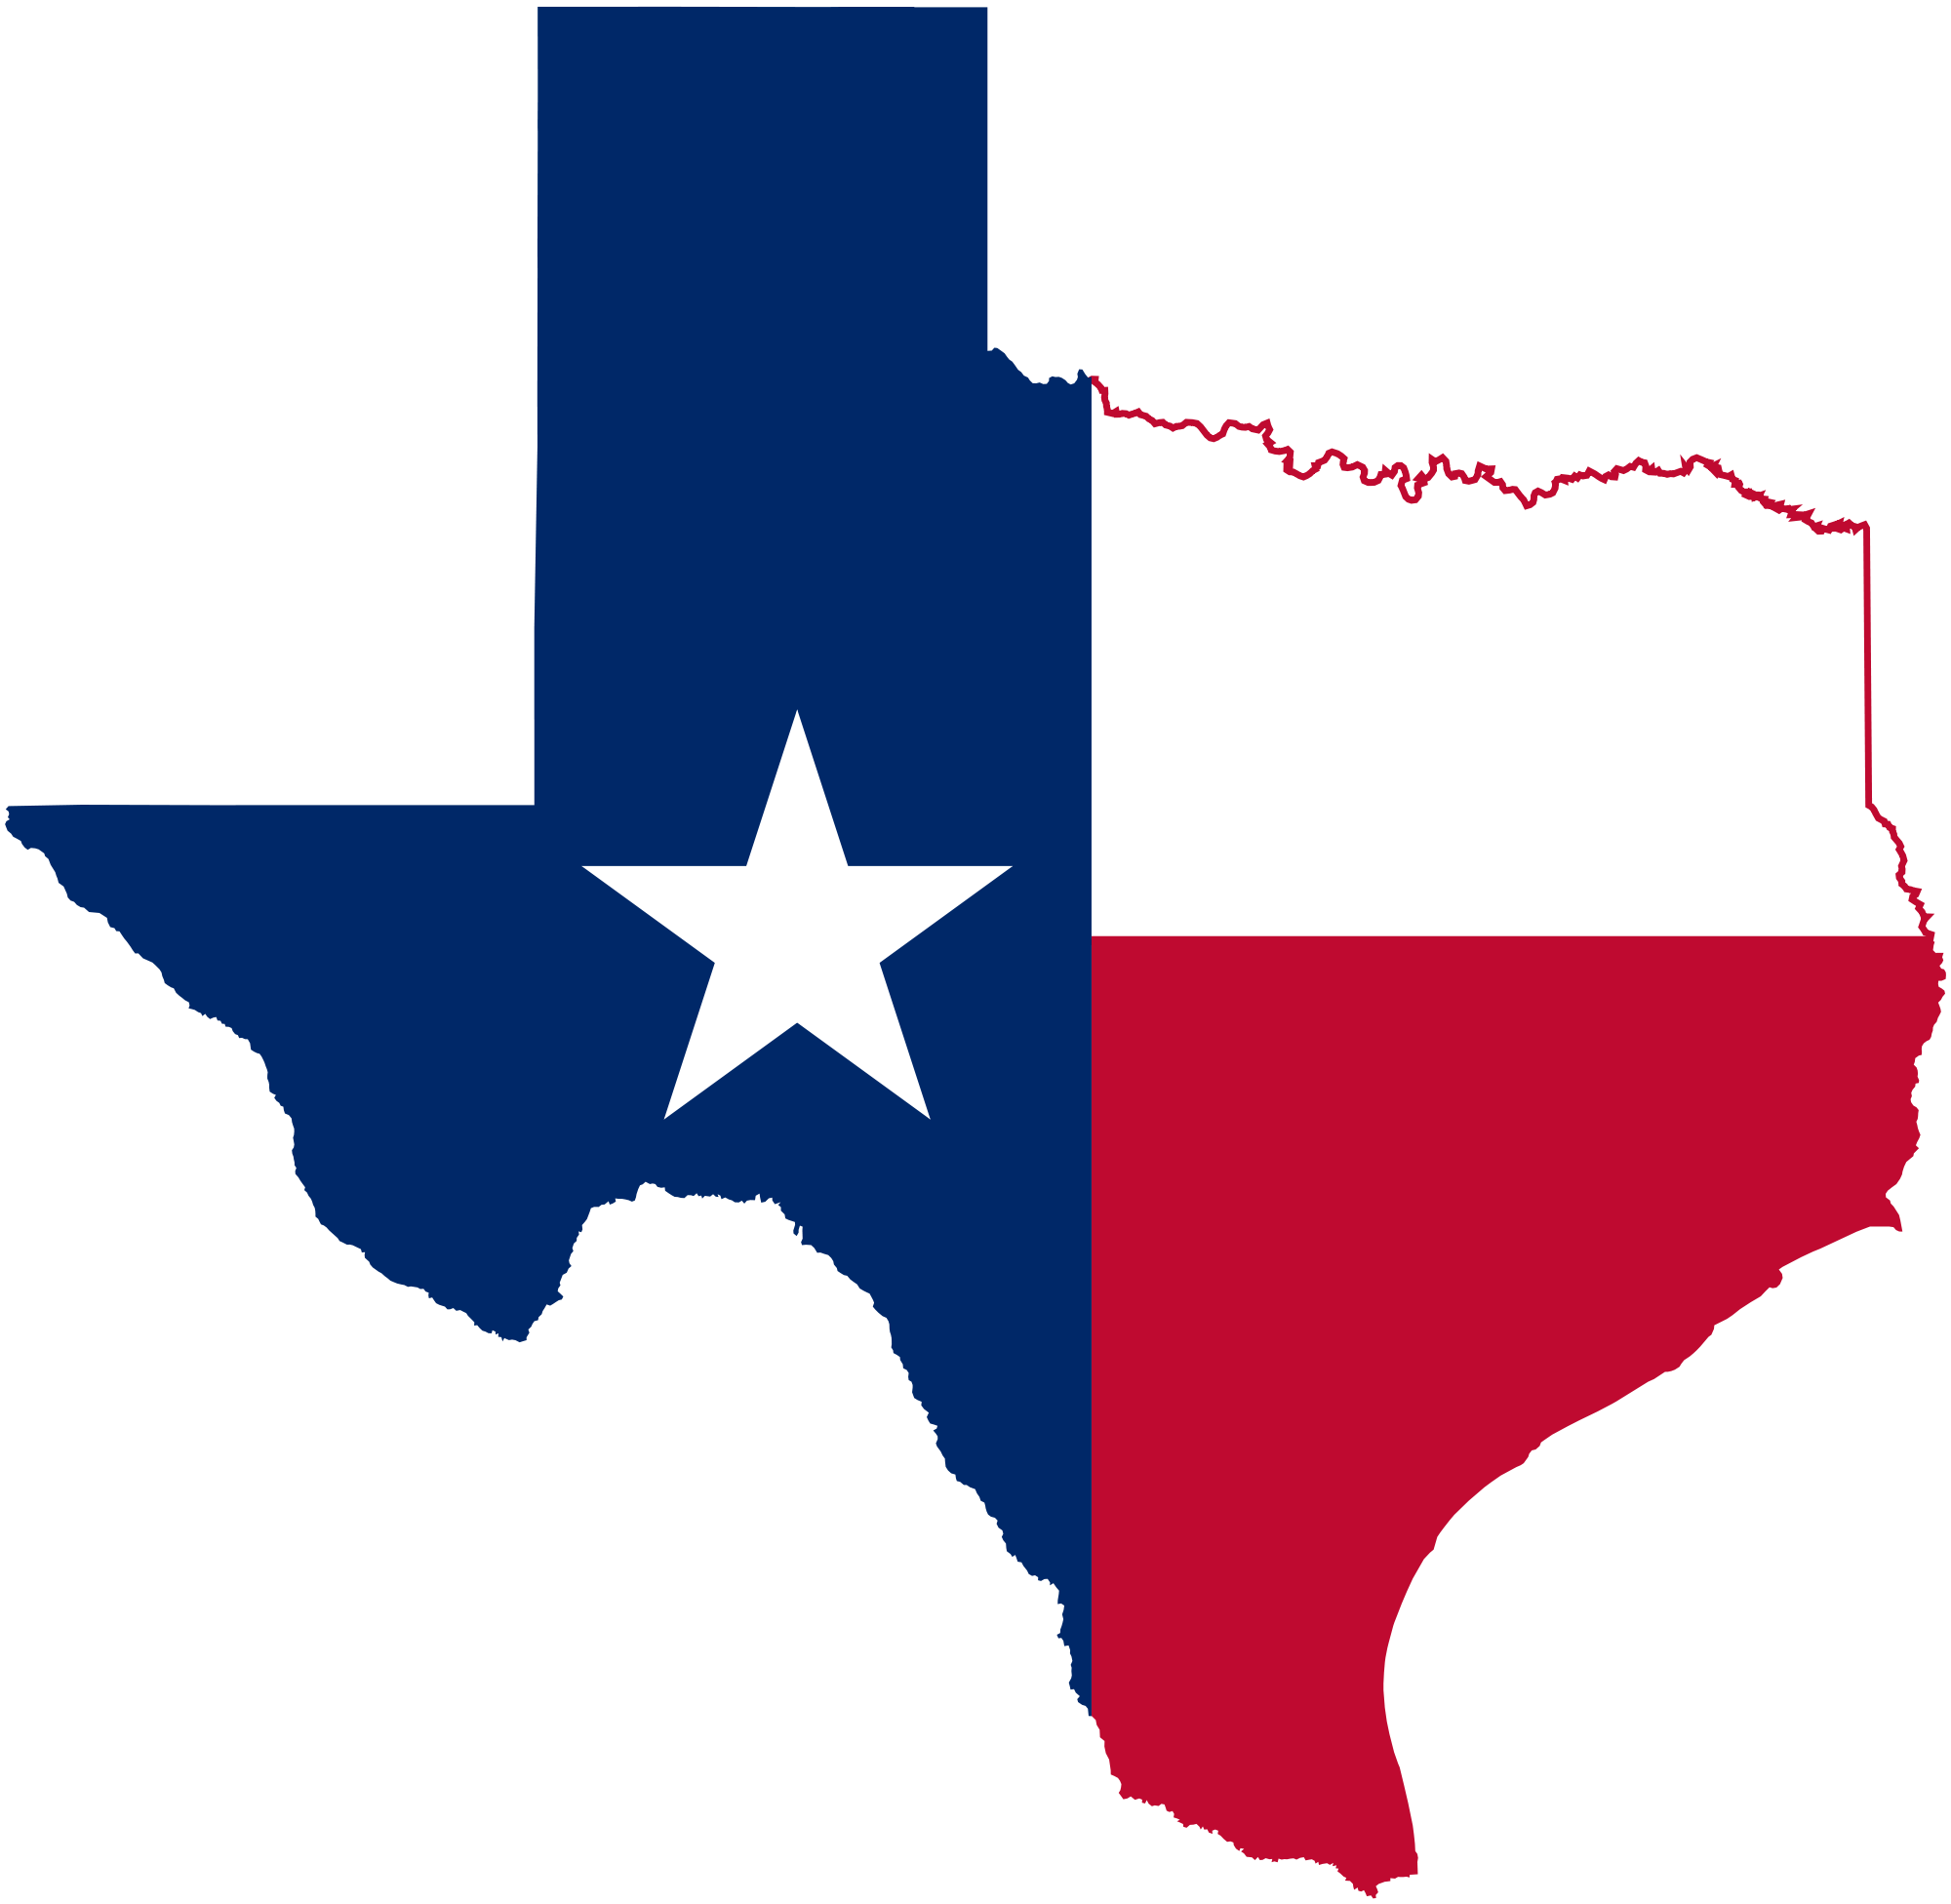 Texas flag over shape of Texas